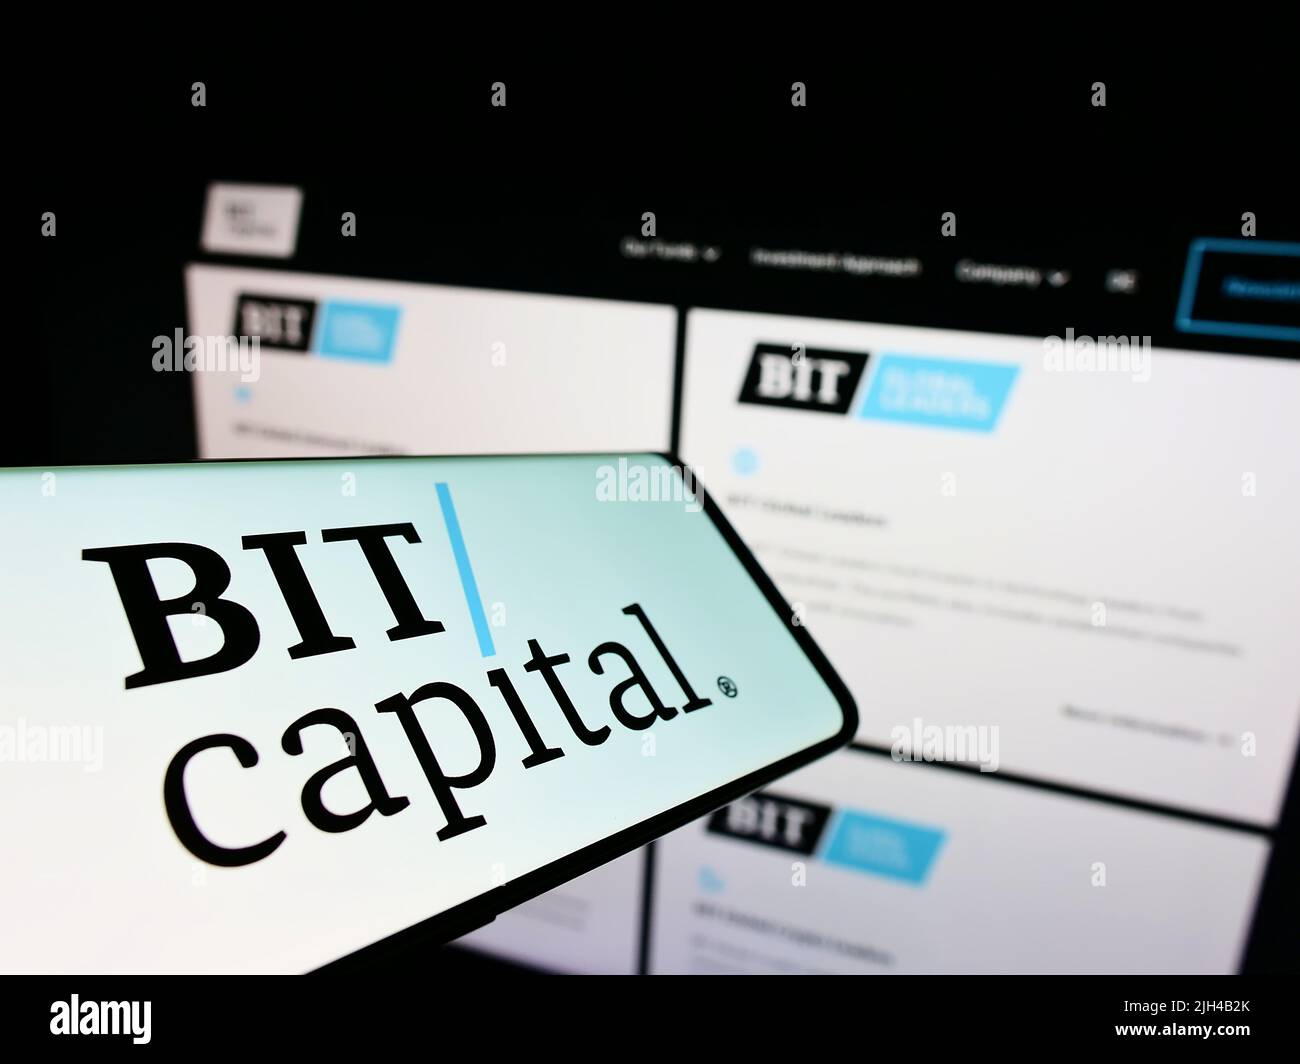 Telefono cellulare con logo della società finanziaria tedesca BIT Capital GmbH sullo schermo di fronte al sito web aziendale. Concentrarsi sul centro del display del telefono. Foto Stock